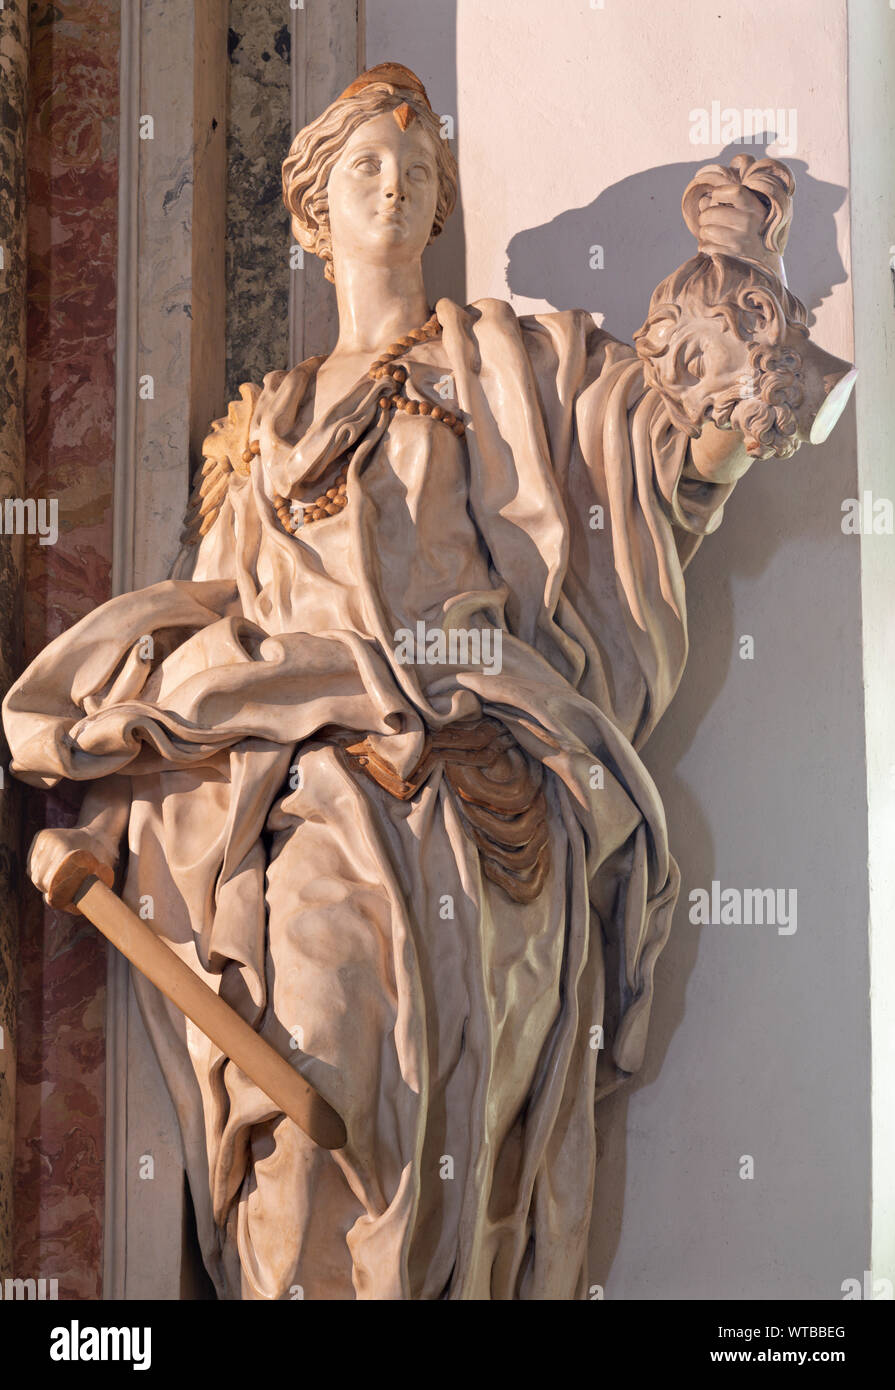 ARCO, Italia - Giugno 8, 2018: la statua di Giuditta nella Chiesa Collegiata dell'Assunta da Gabriele Cagliari forma 17. cento.. Foto Stock